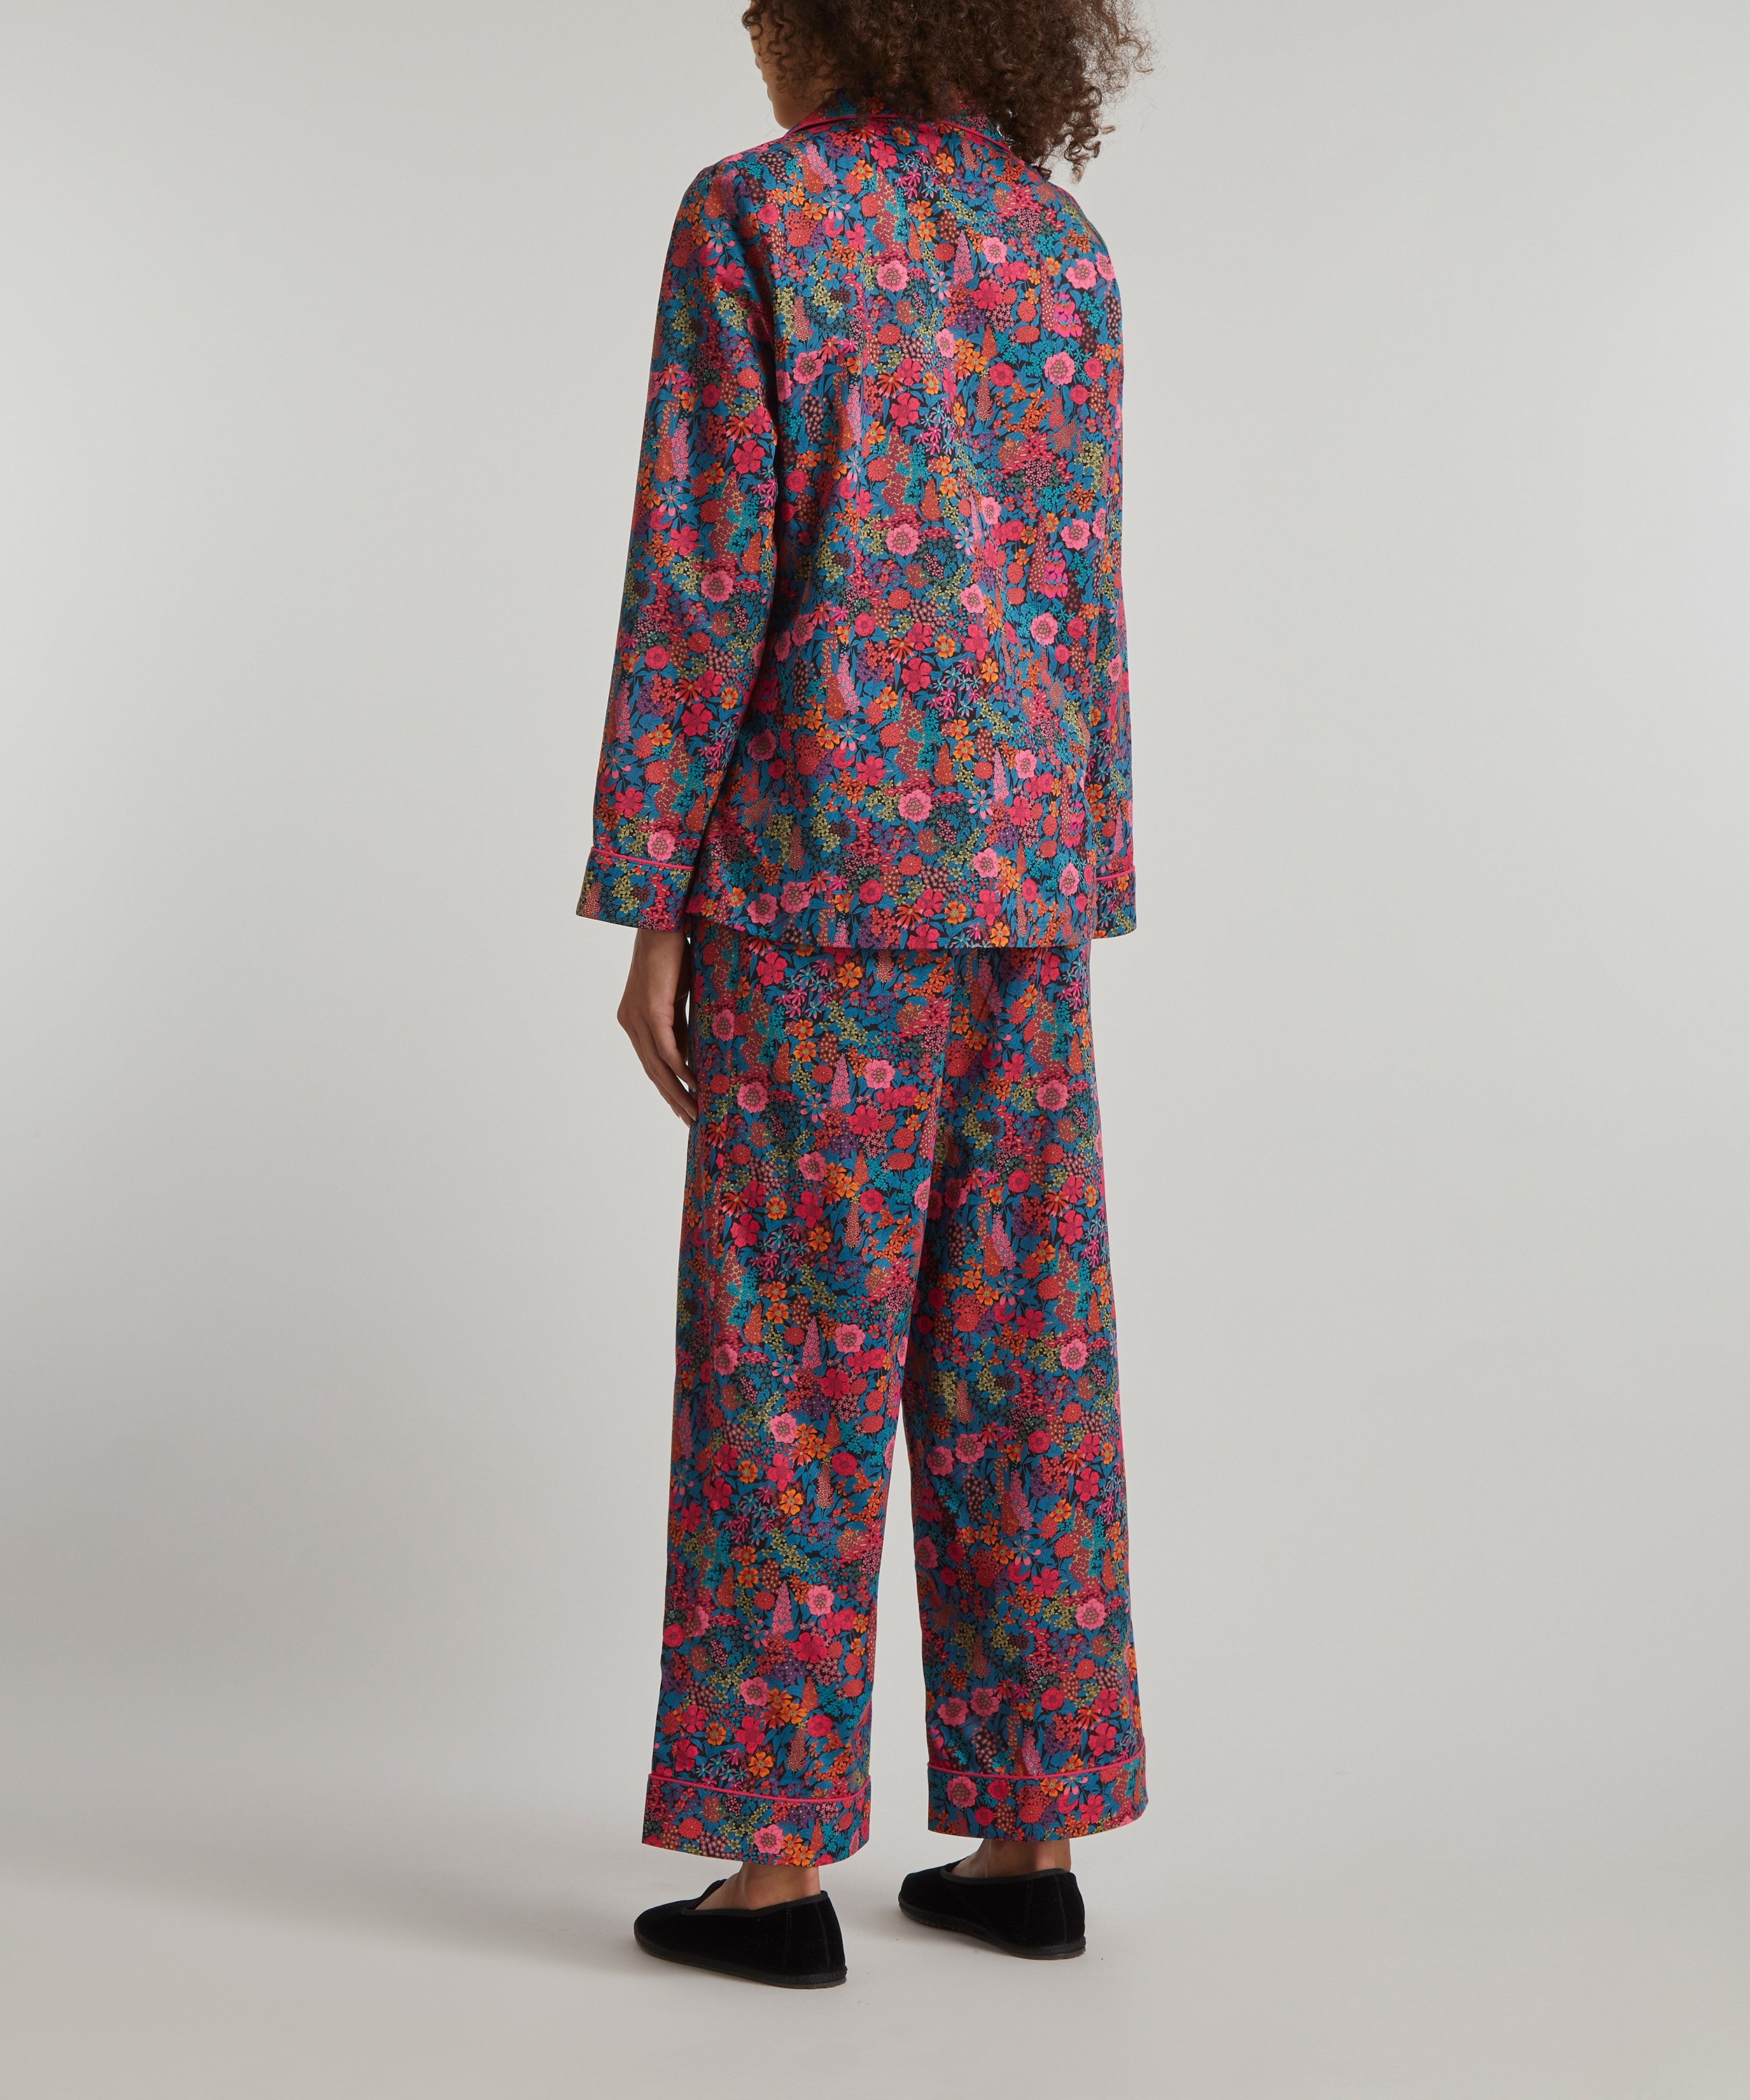 Liberty Women's Lindsay Garden Tana Lawn Cotton Pyjama Set